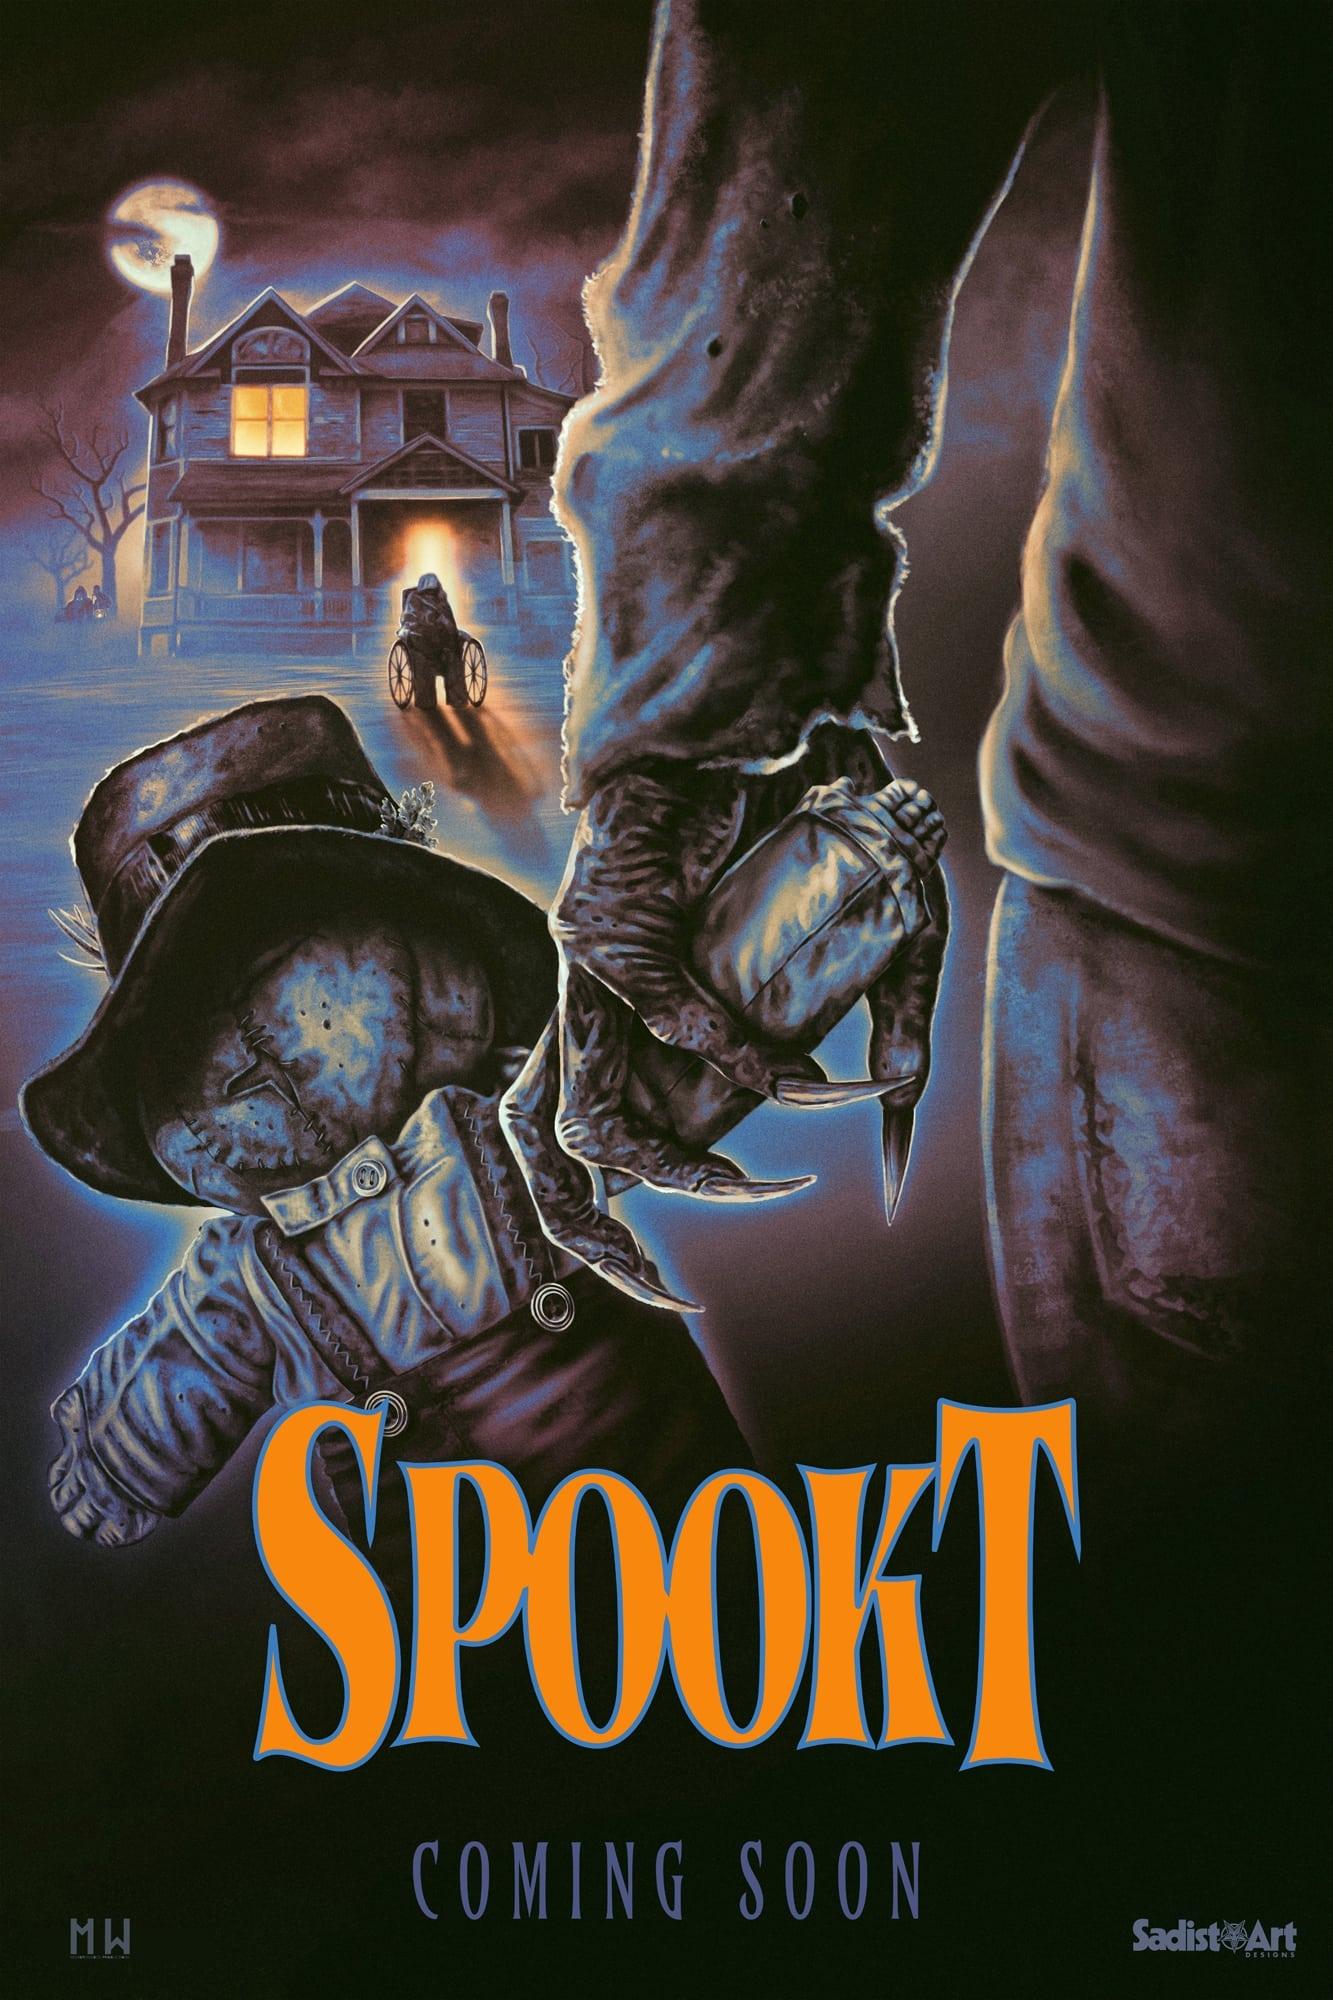 Spookt poster